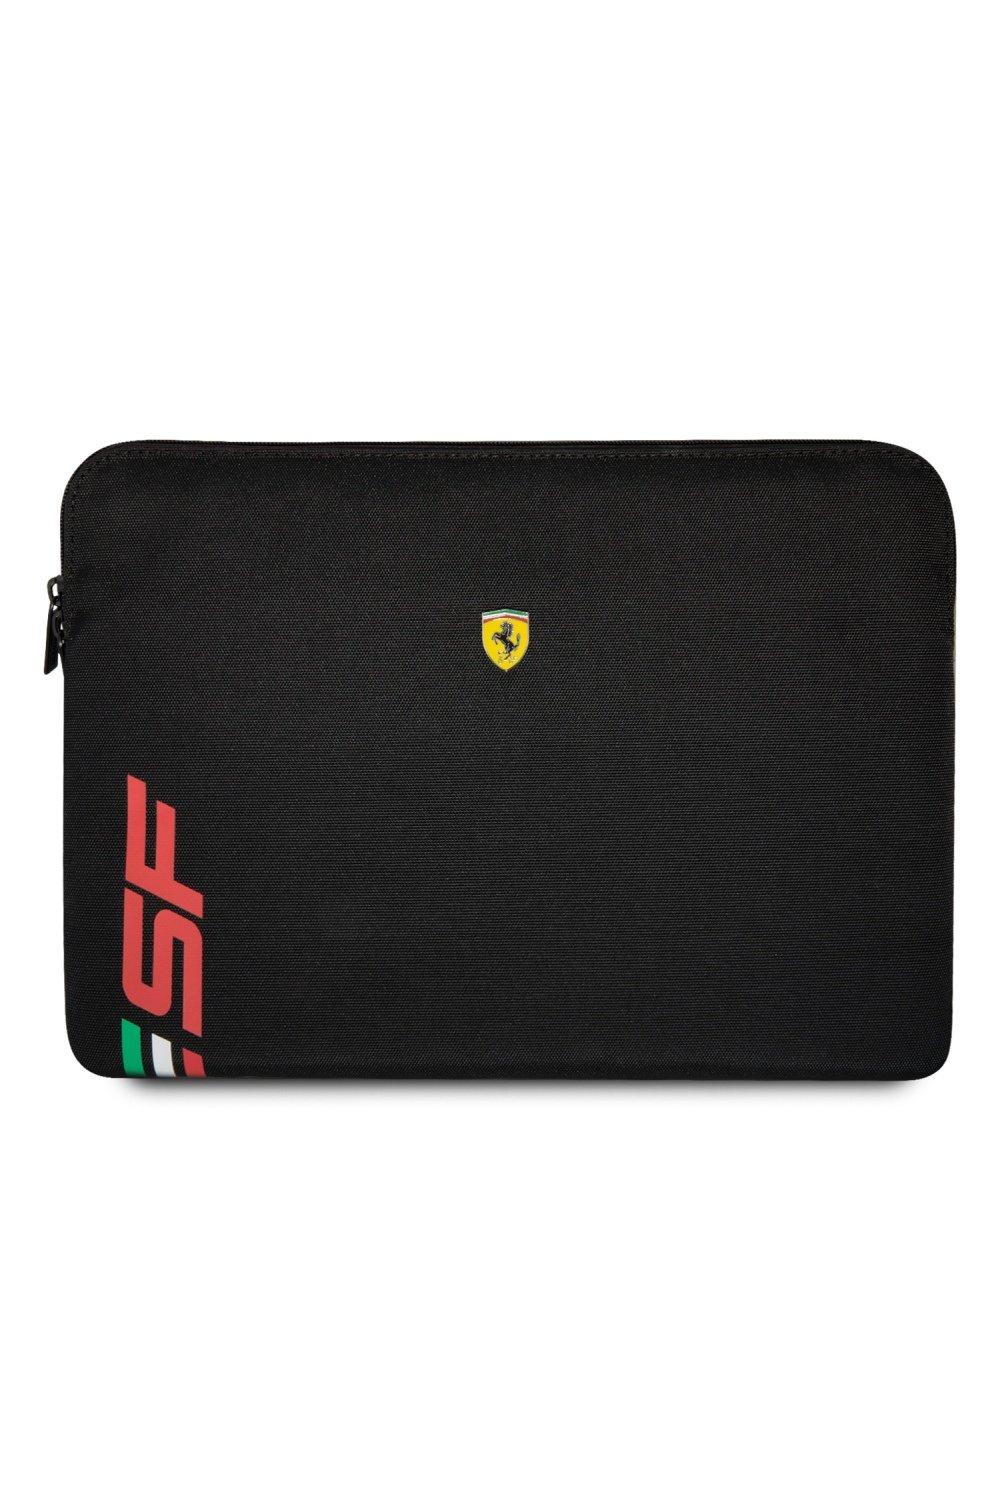 Чехол для ноутбука 14 дюймов из искусственной кожи с логотипом Sf Ferrari, черный ferrari мяч футбольный ferrari р 5 цвет чёрный